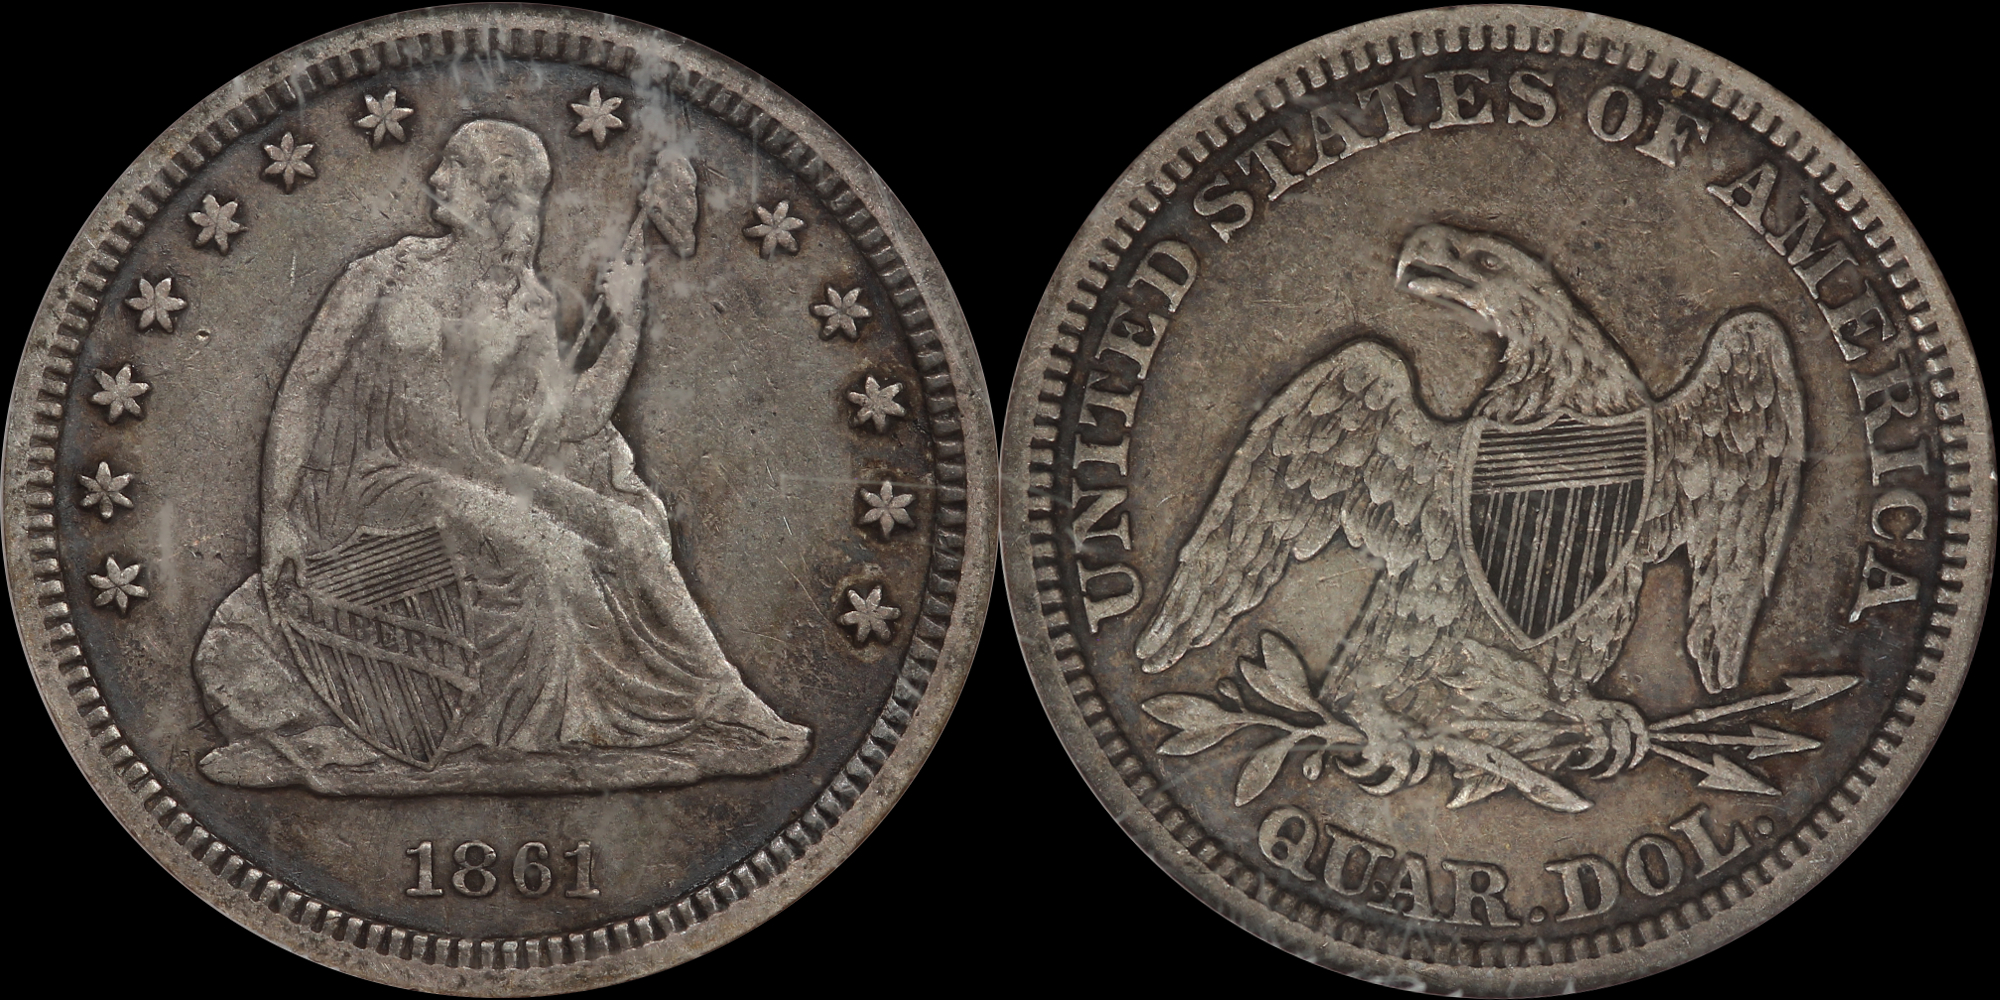 25c-1861 